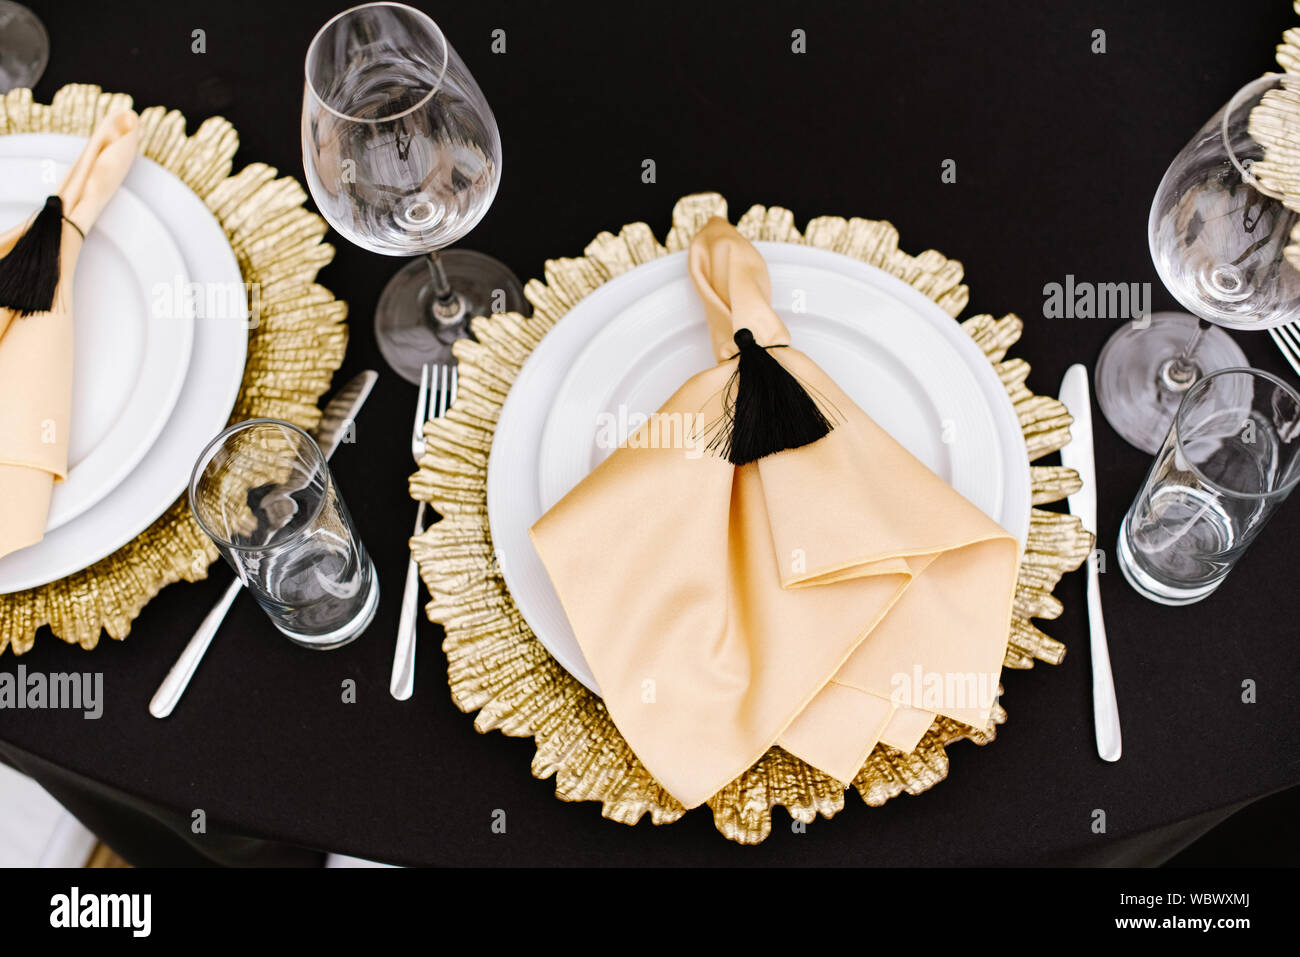 Un comedor, una placa blanca y una decoración de plato de metal dorado  sobre la mesa en el restaurante. Una servilleta de tela hecha de golden  atlas y pincel negro Fotografía de